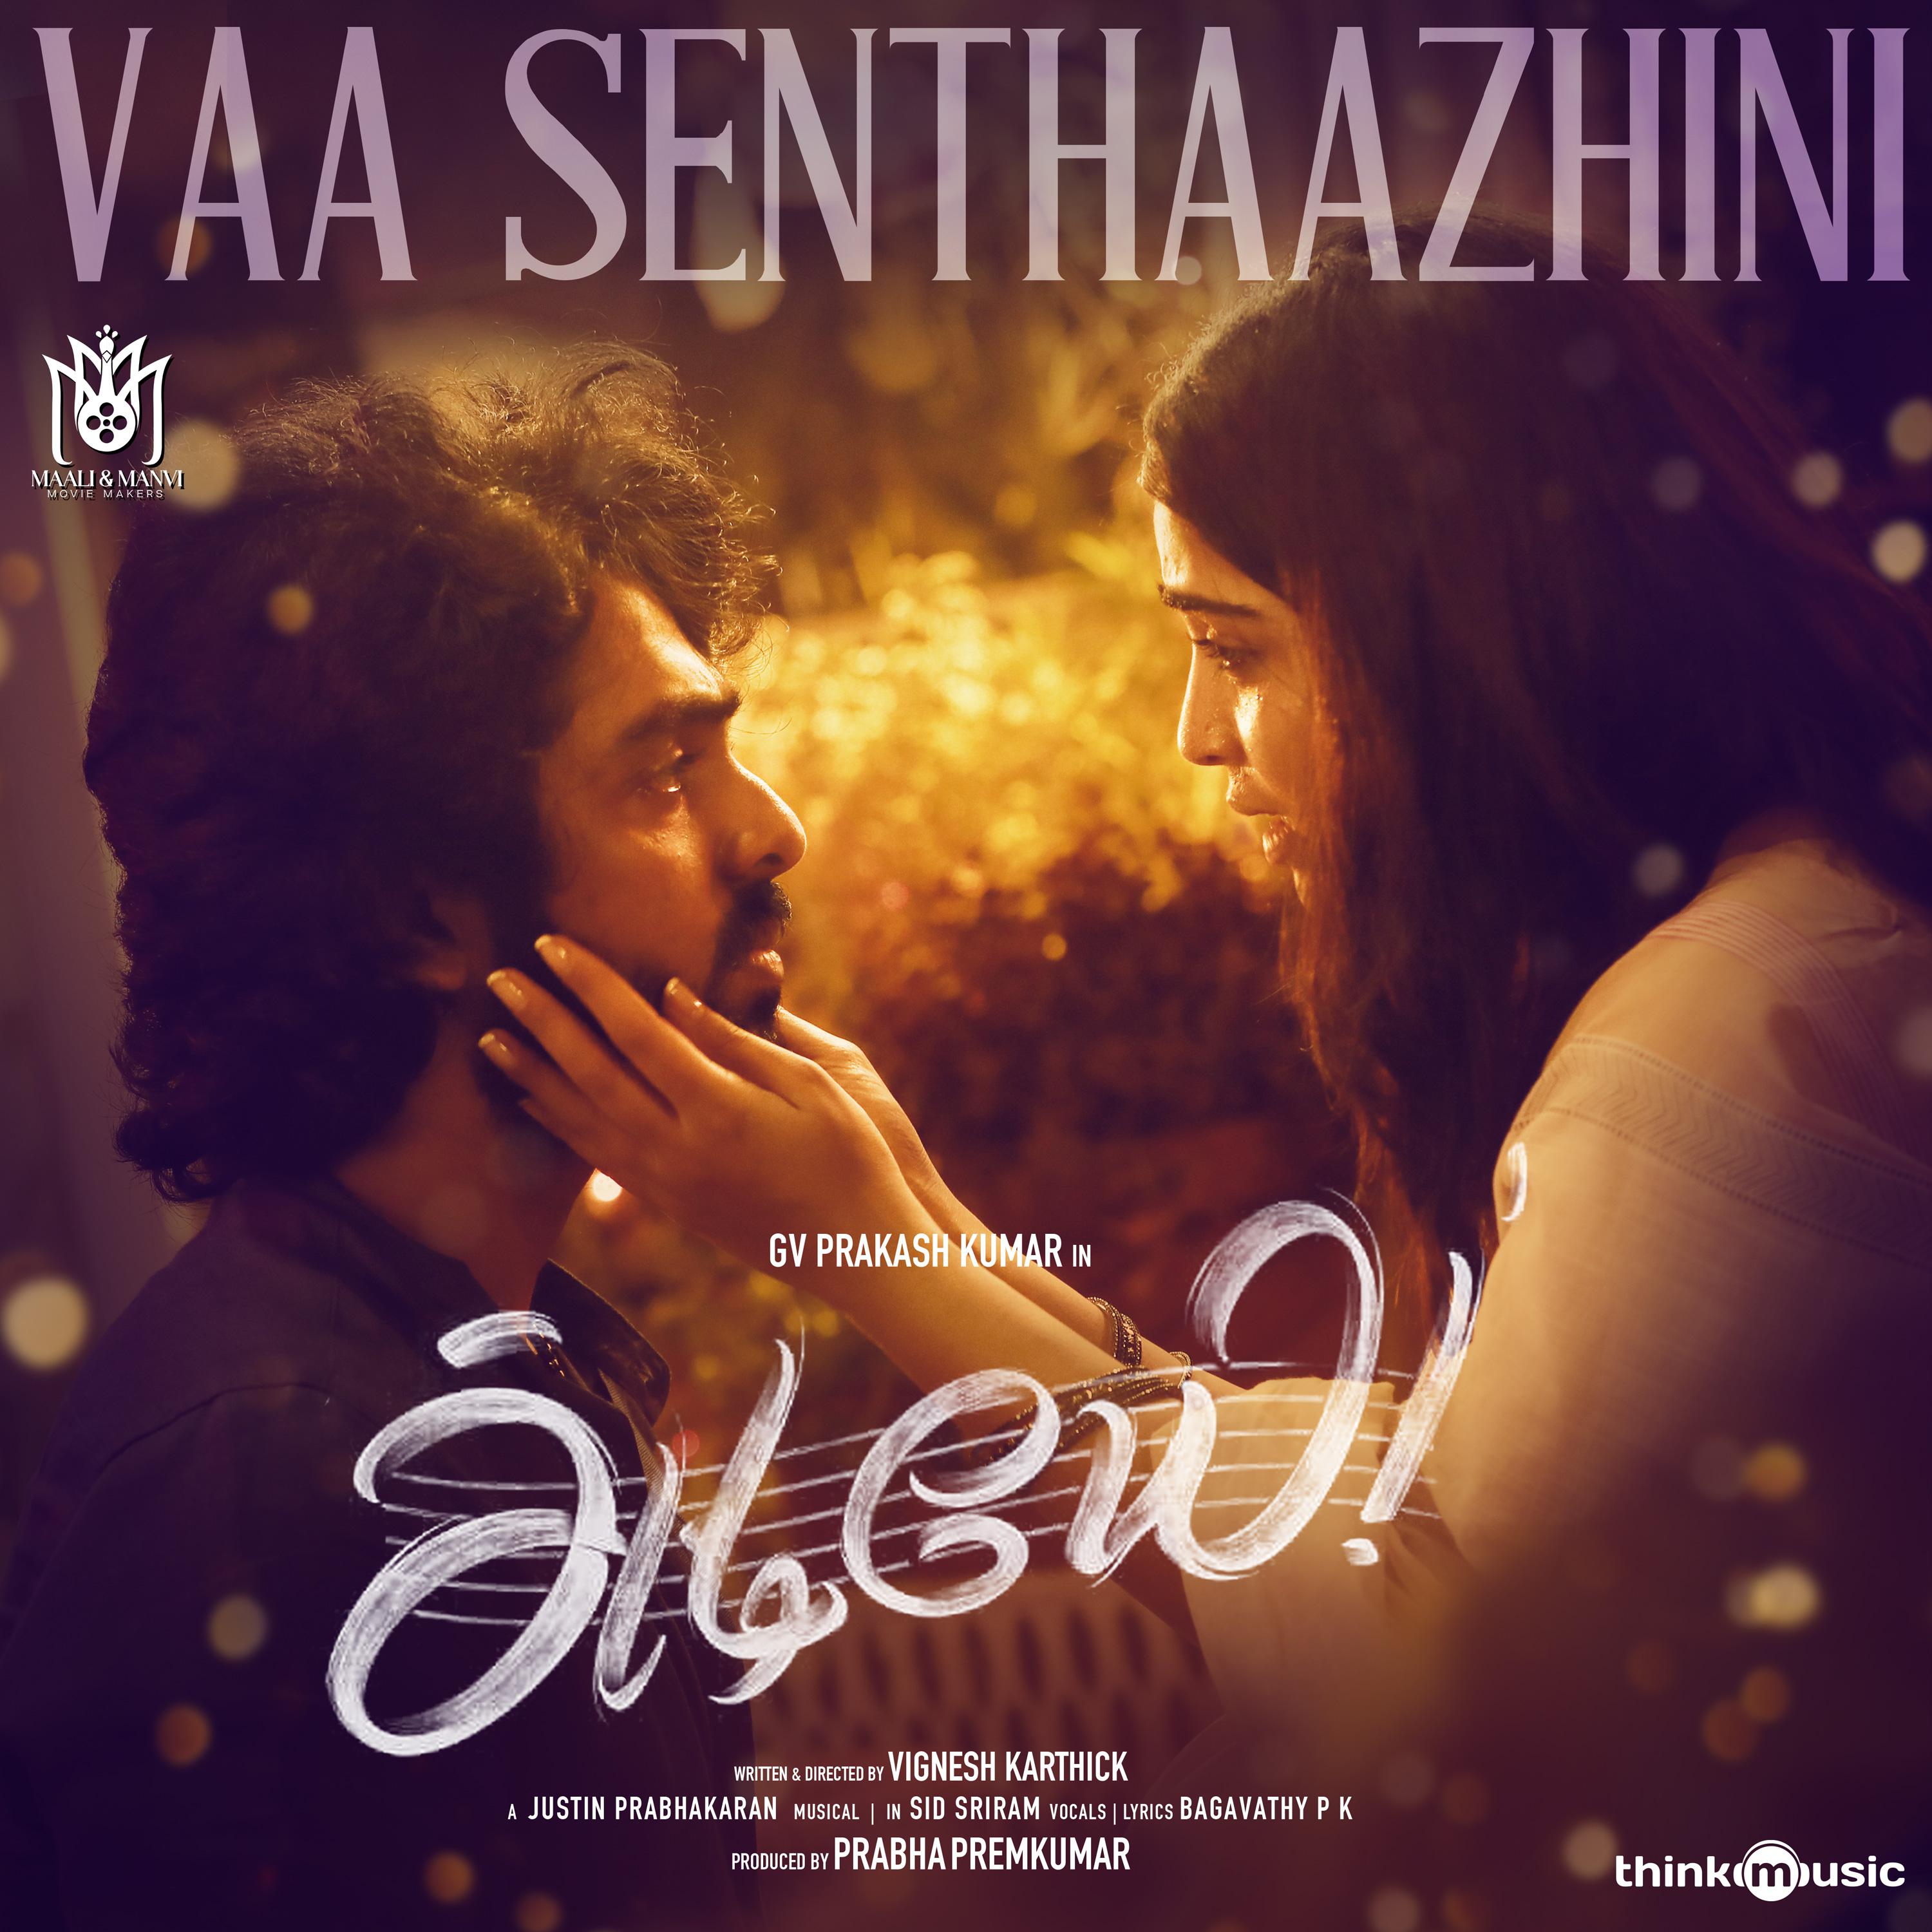 Постер альбома Vaa Senthaazhini